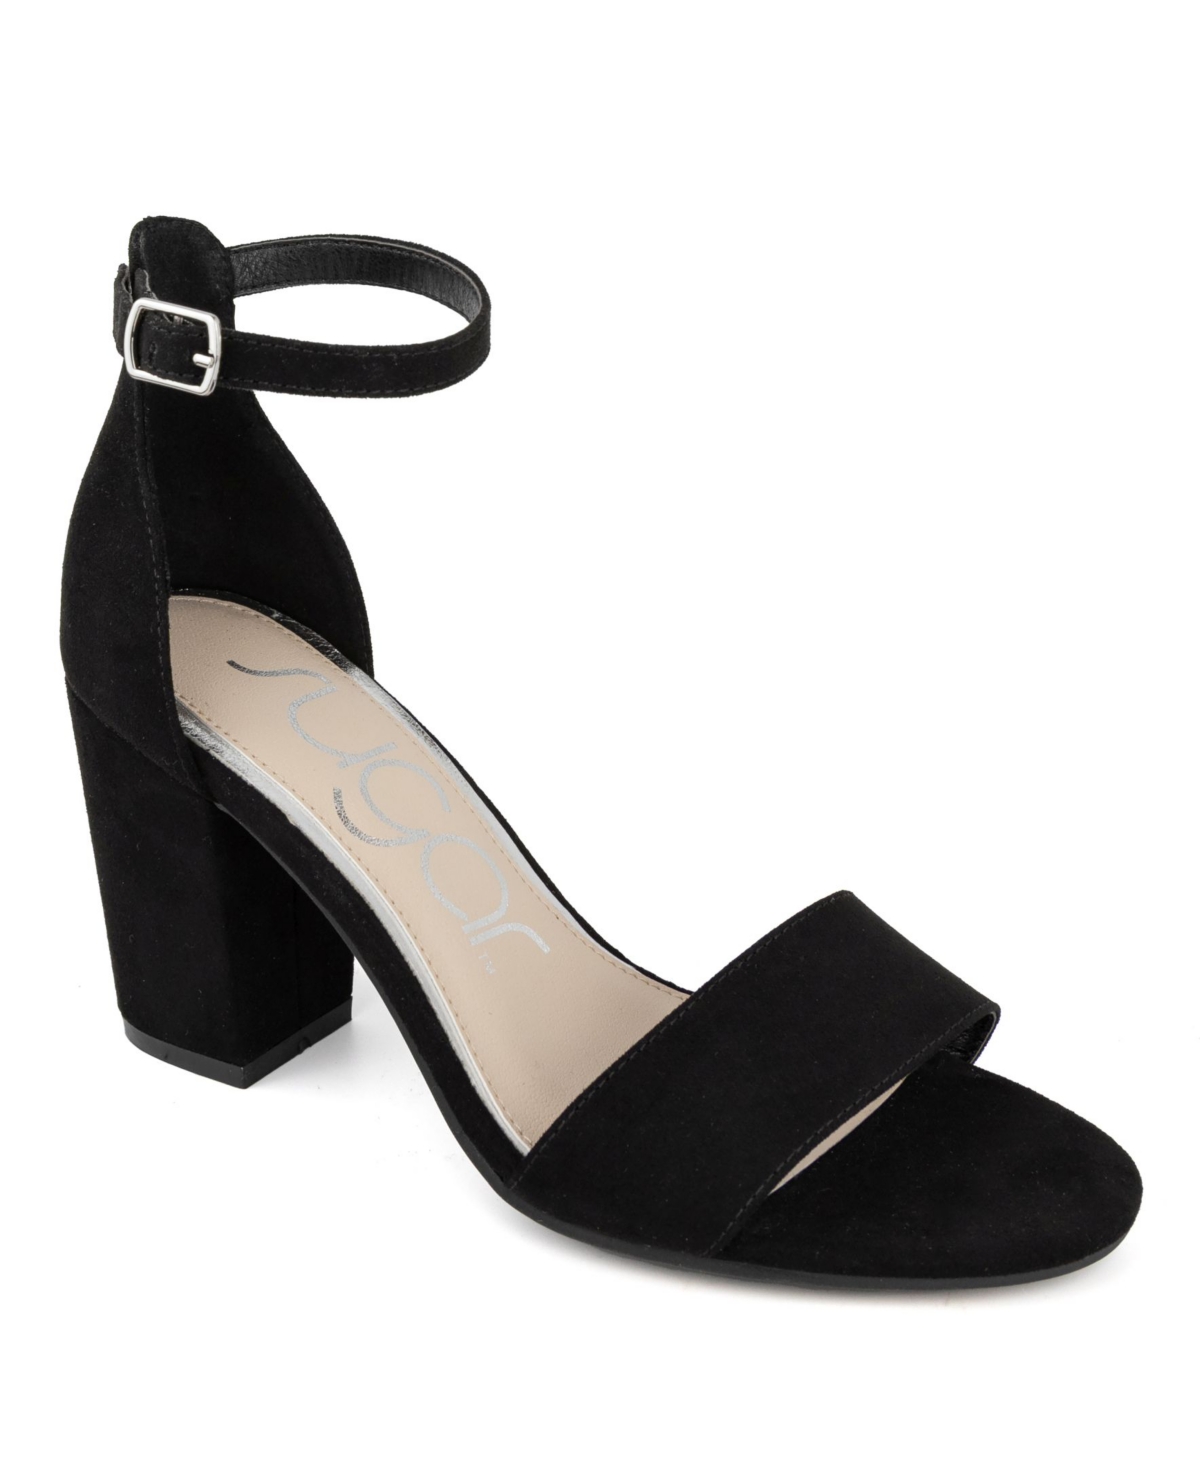 Women's Machelene Dress Heel Sandals - Black With Stones